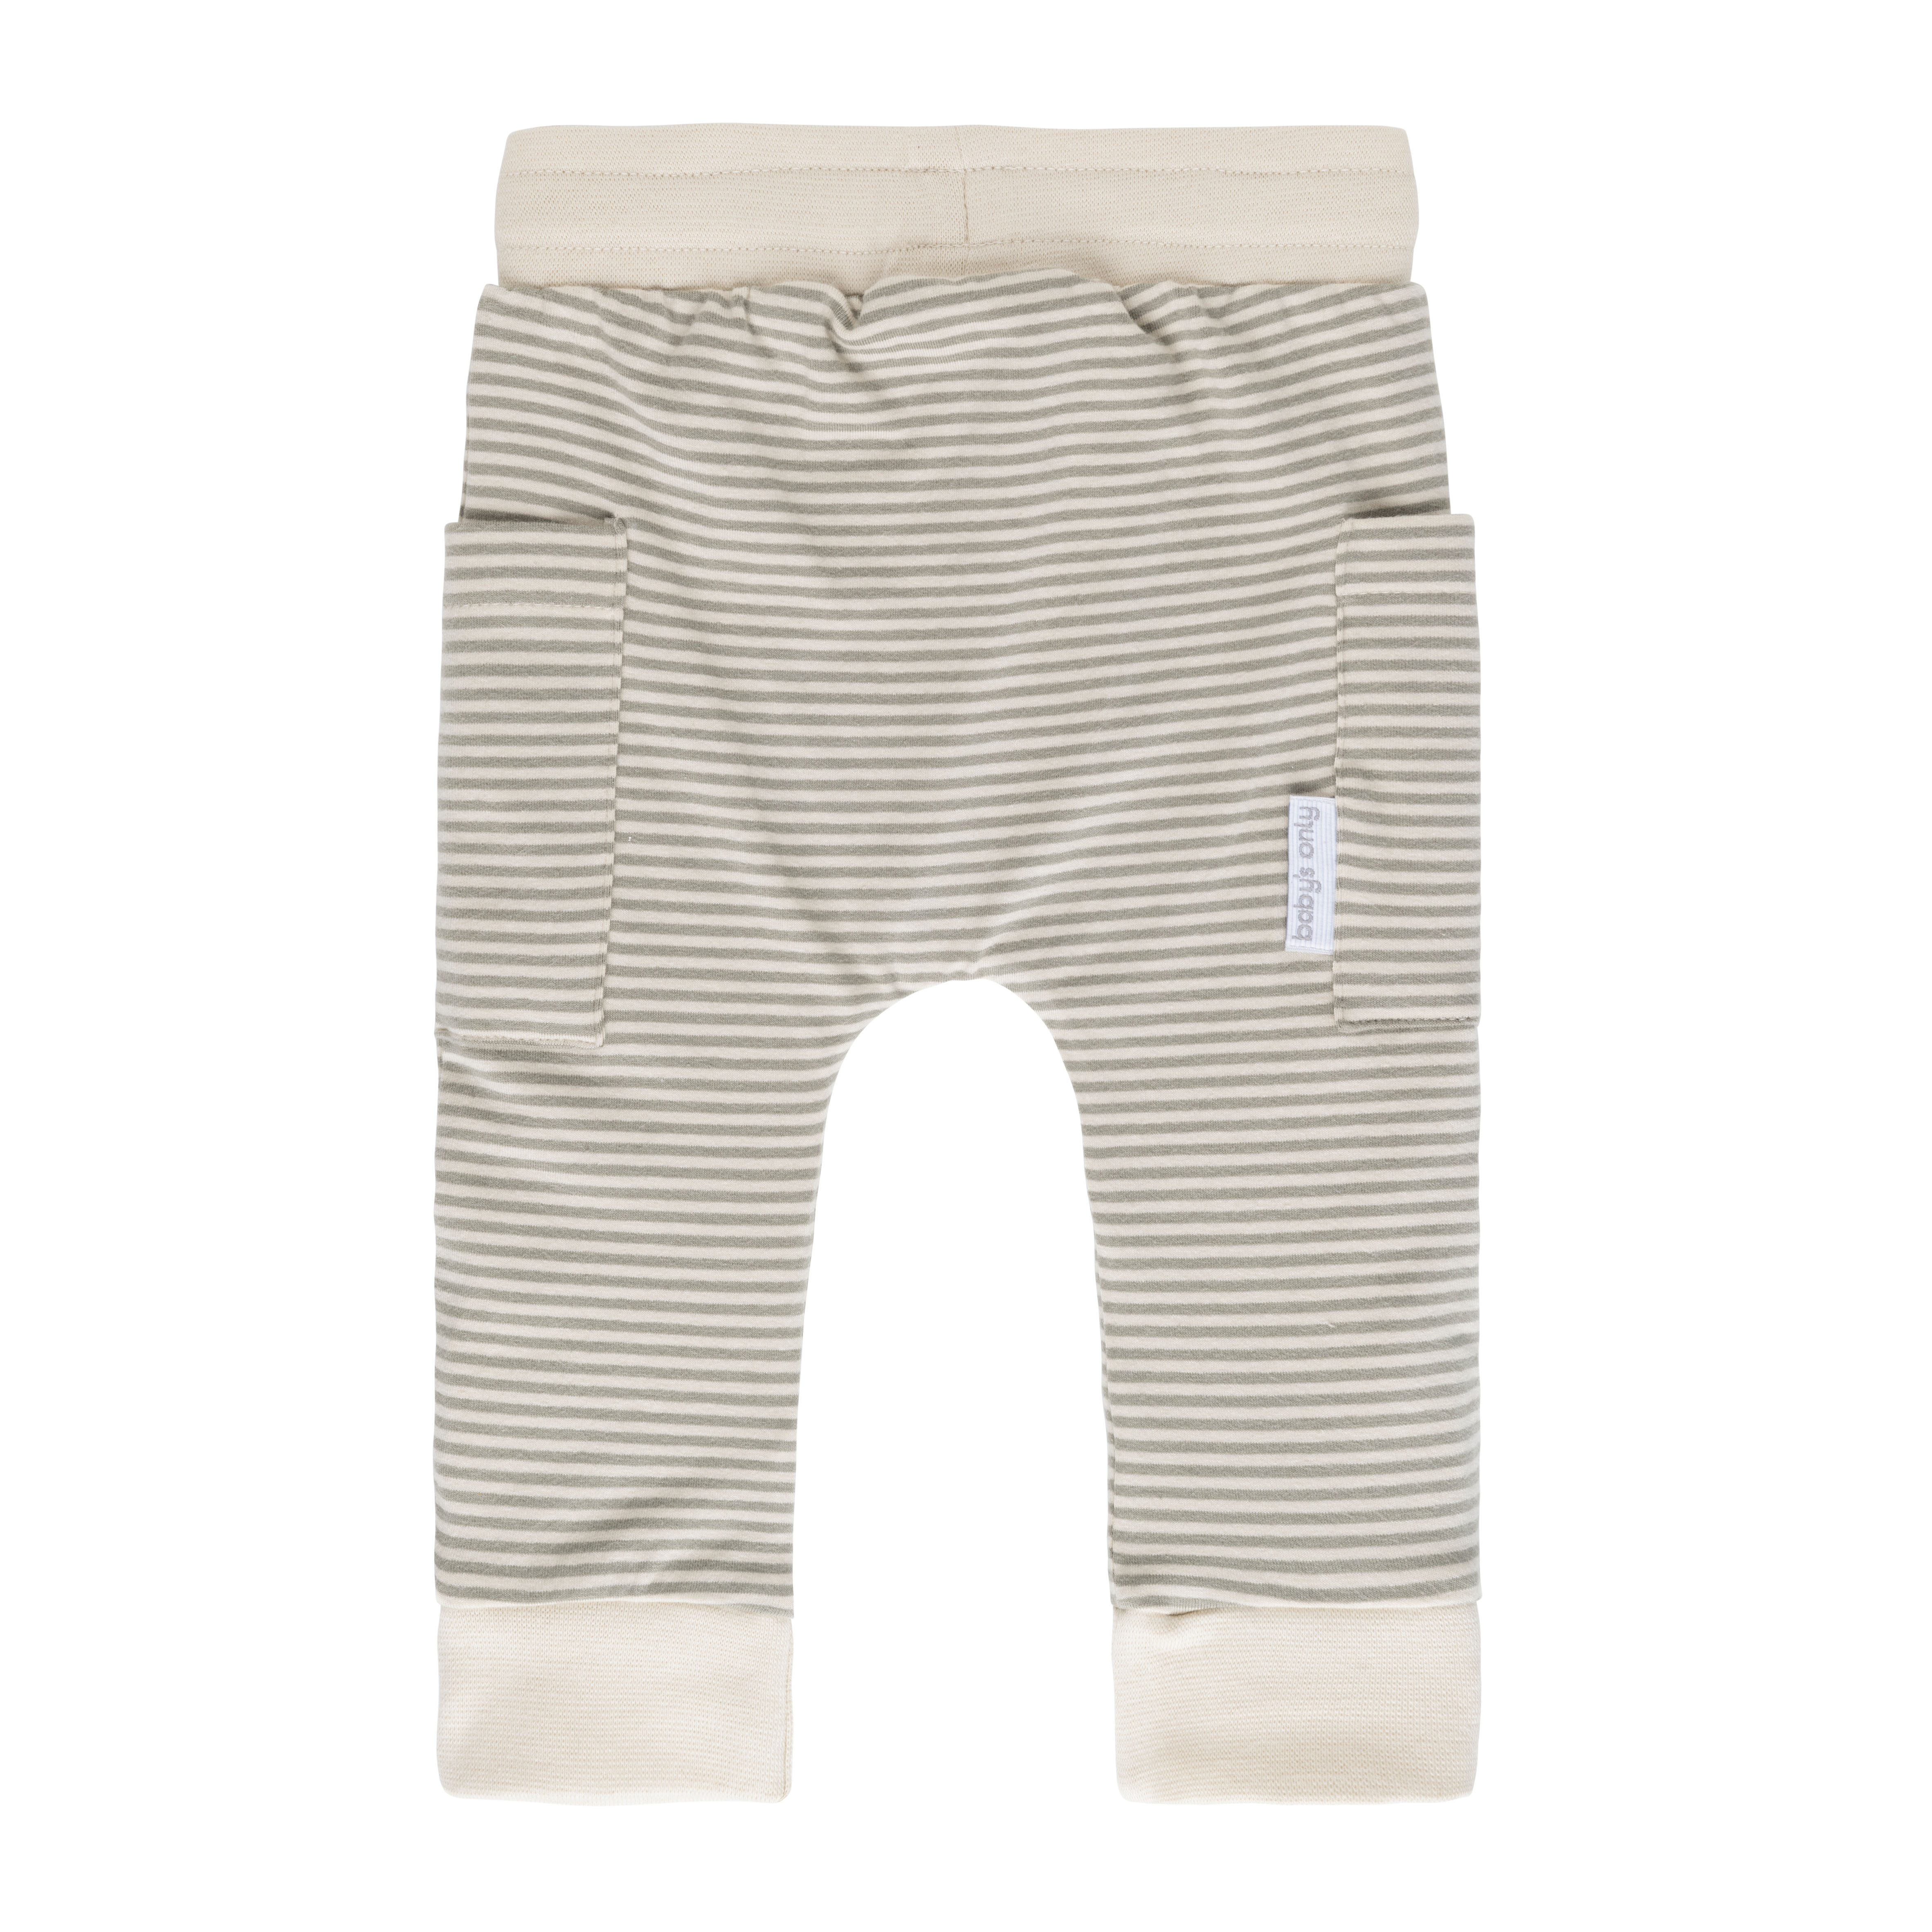 Pants Stripe urban green - 74